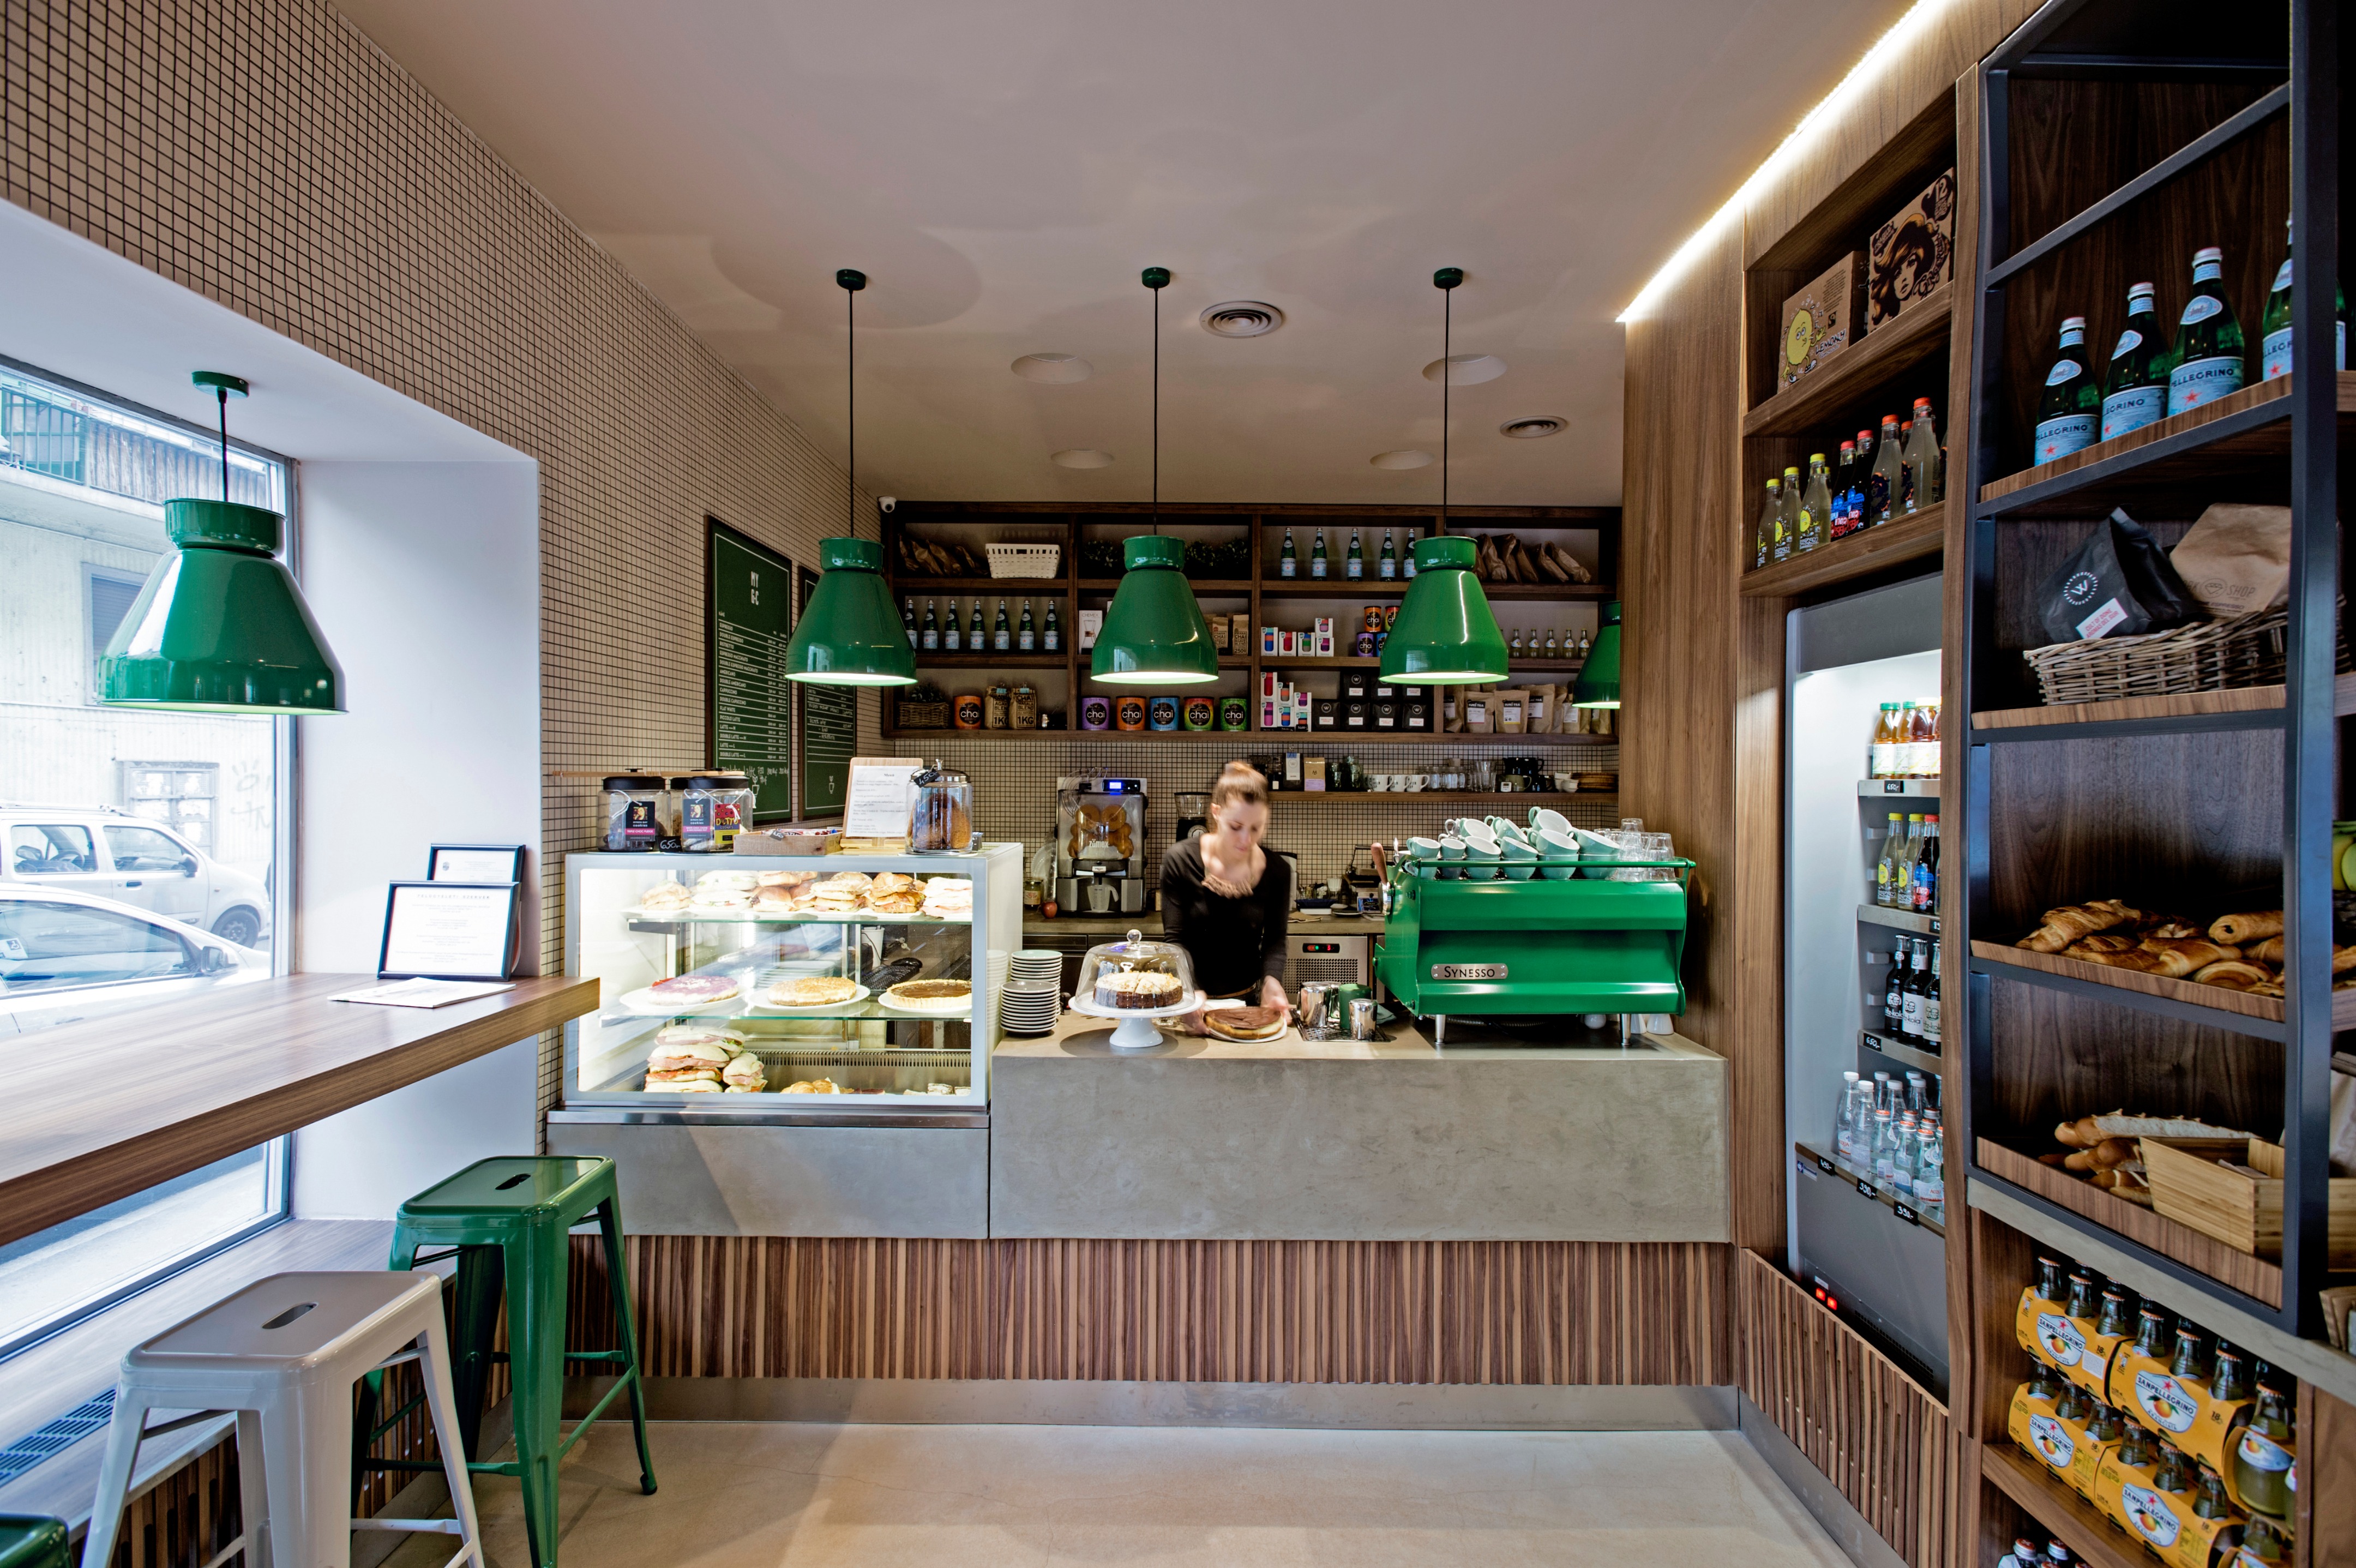 Frenchie cafe. Кофейня «Coffee shop» в Афинах. Green Coffee кофейня. Интерьер кофейни маленькой. Кафетерий интерьер.